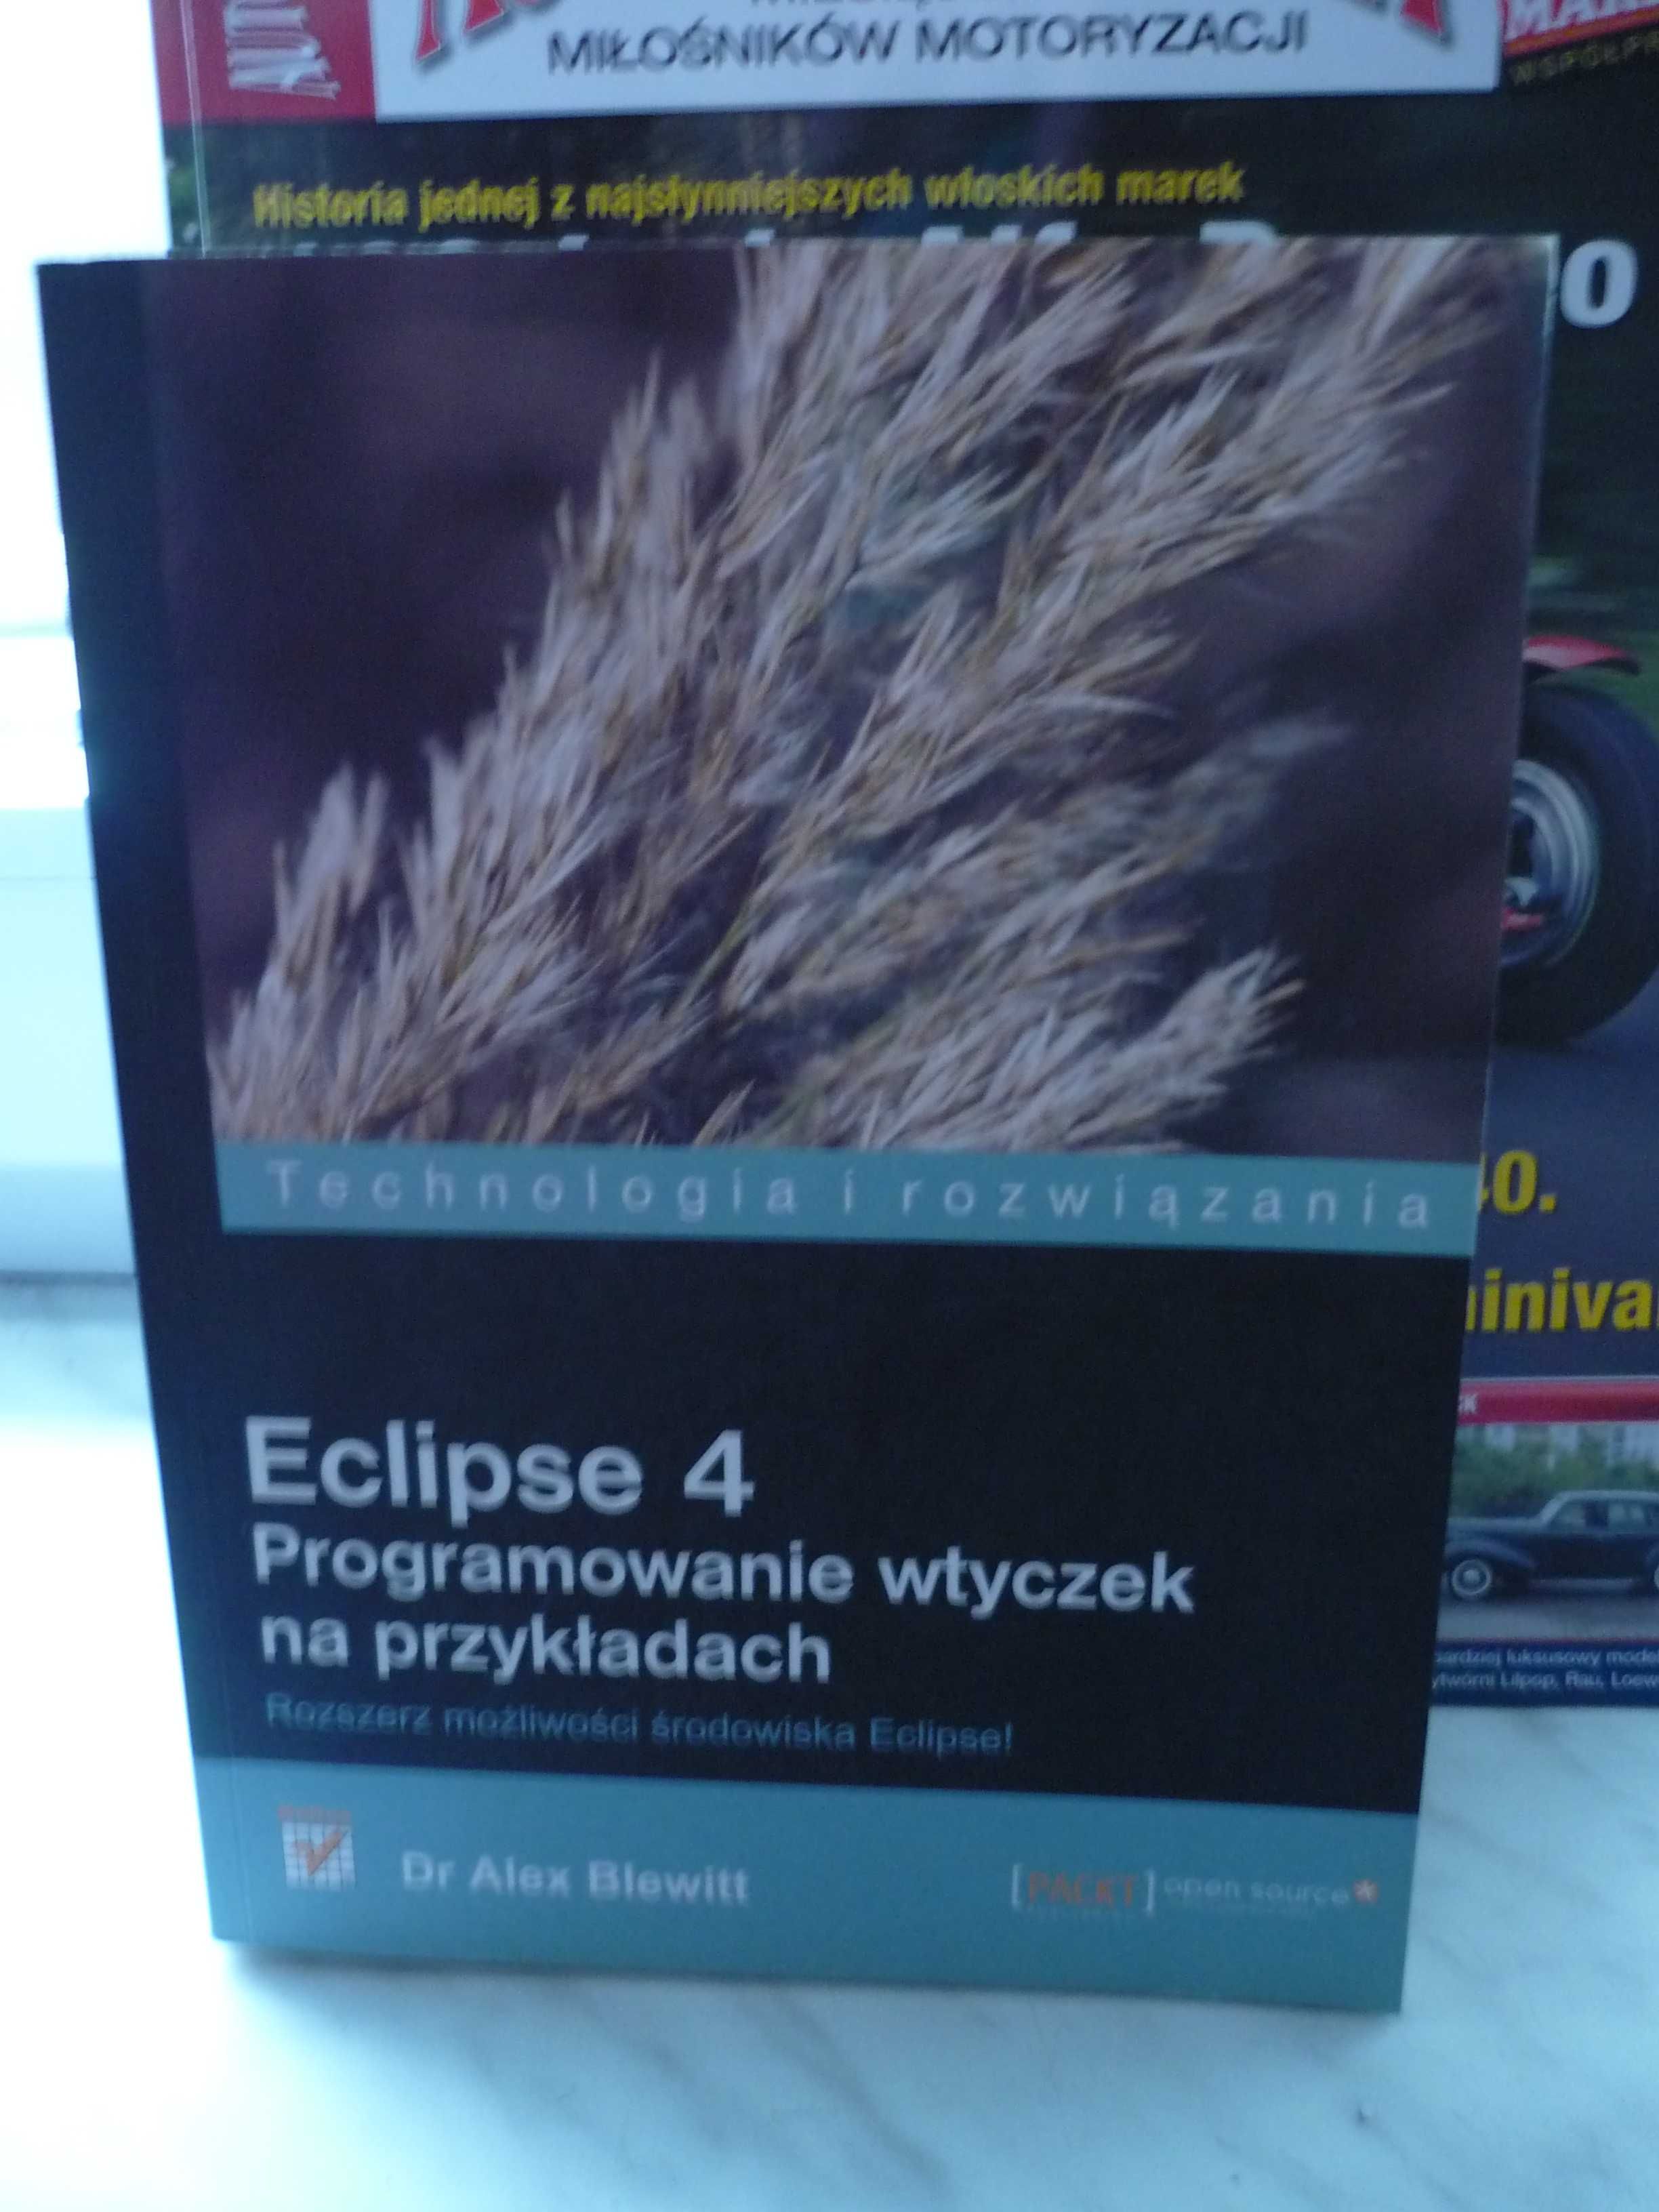 Eclipse 4 , Programowanie wtyczek na przykładach.